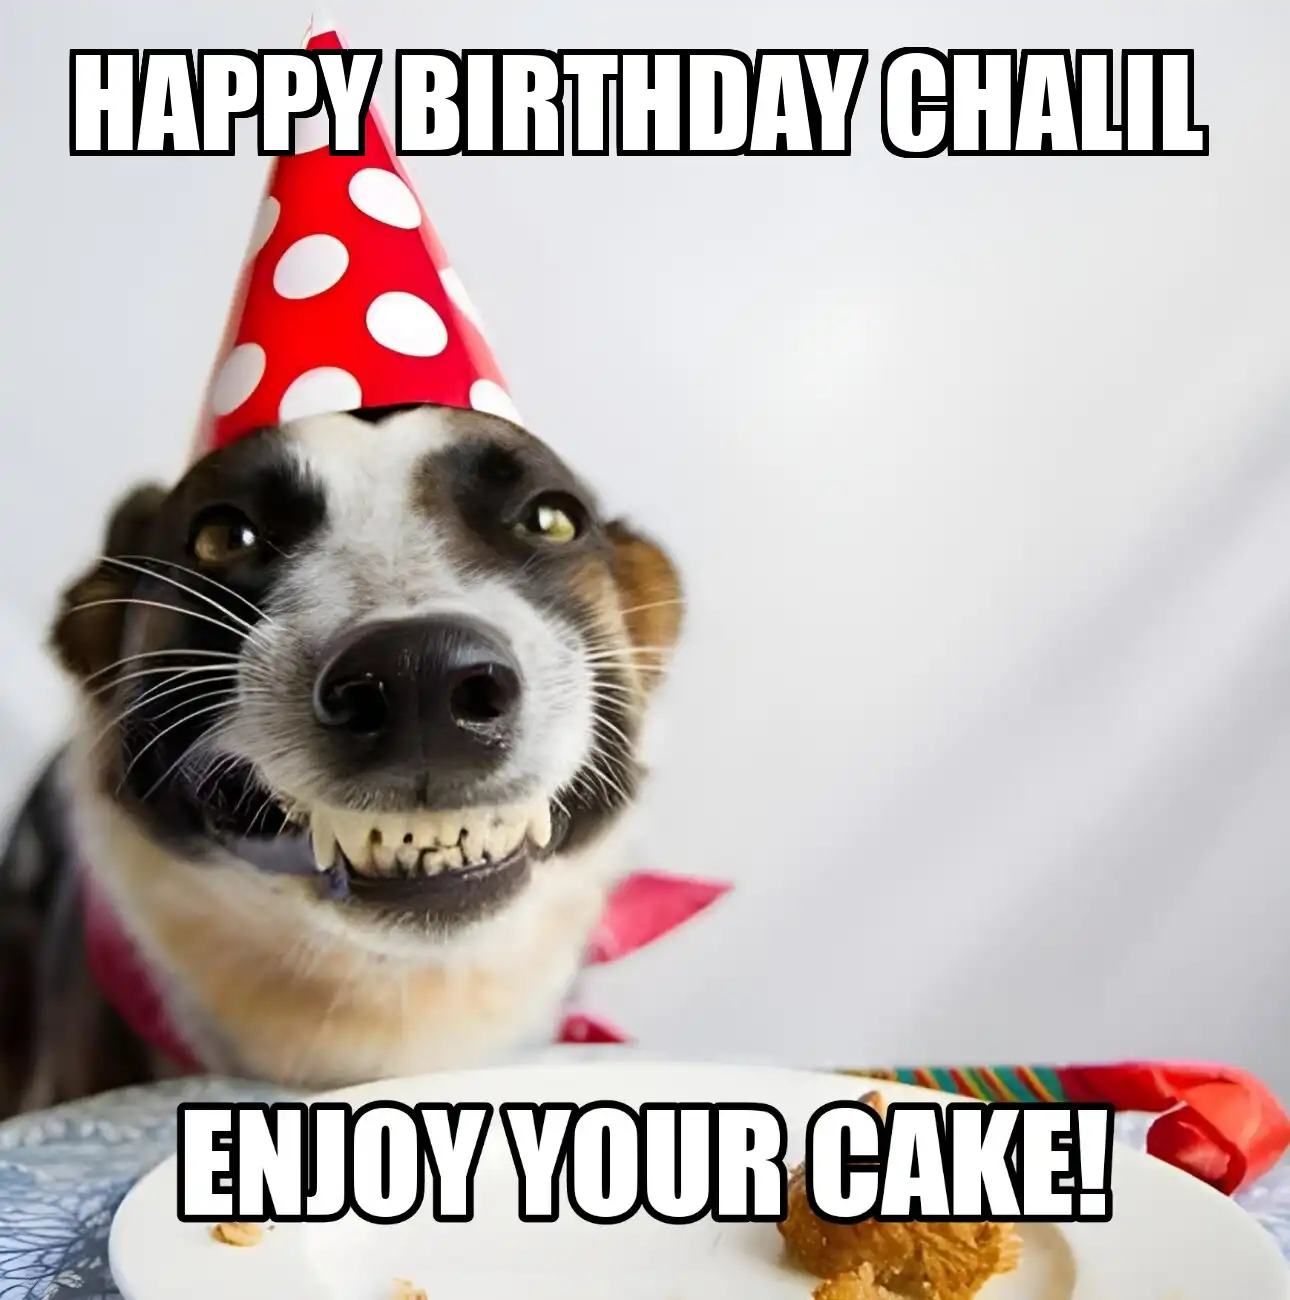 Happy Birthday Chalil Enjoy Your Cake Dog Meme